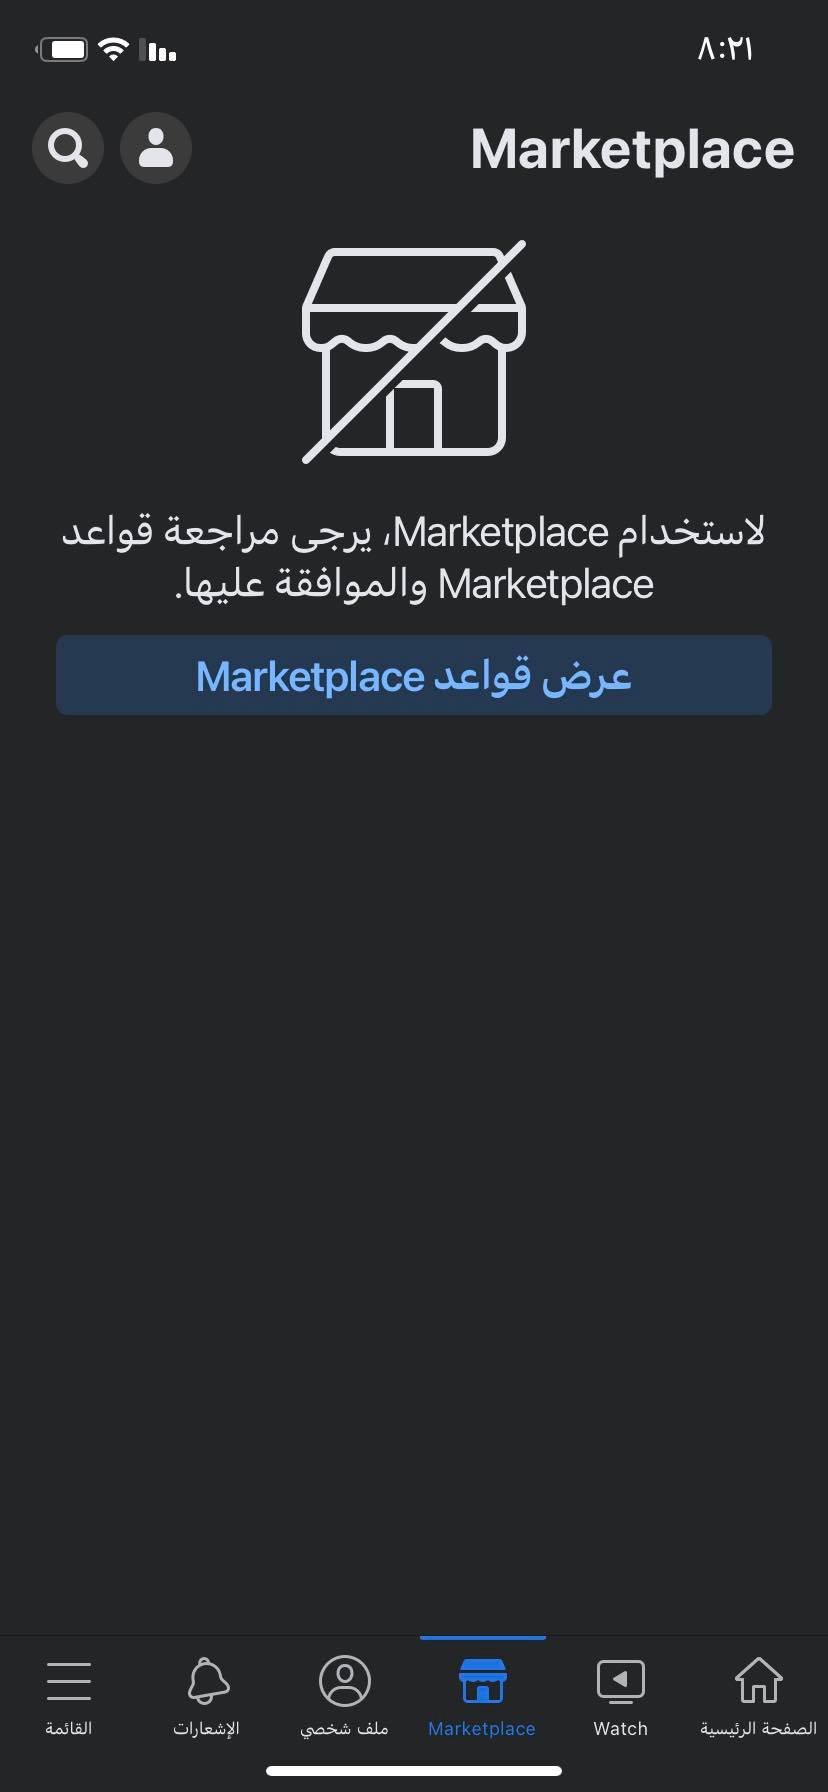  إنشاء Marketplace على الفيس بوك